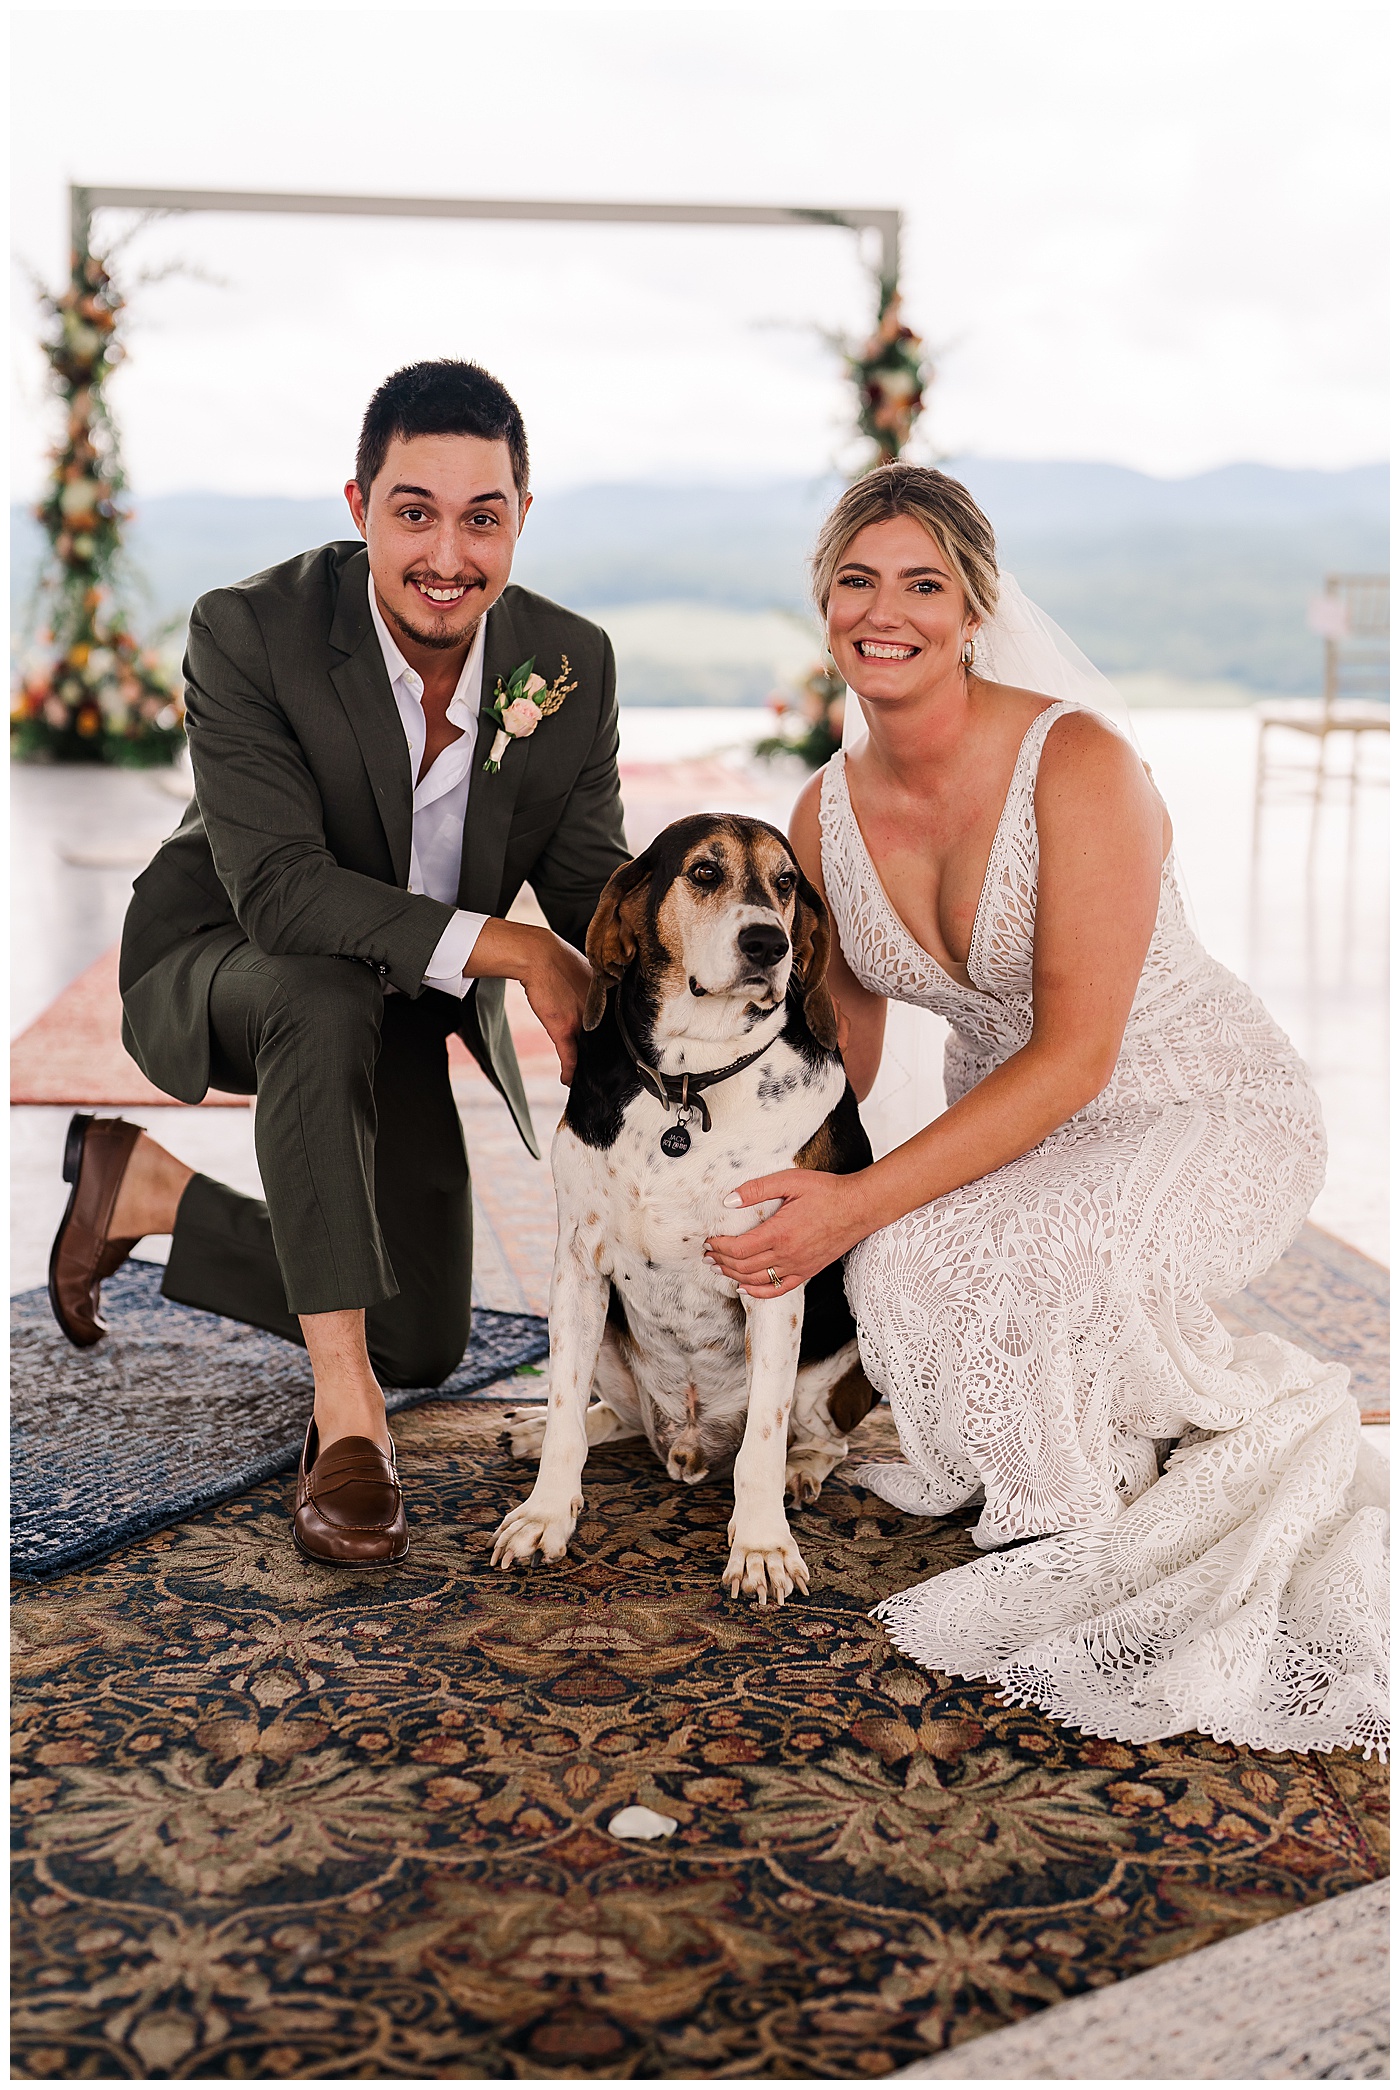 Ocoee Wedding the Couple and their Dog